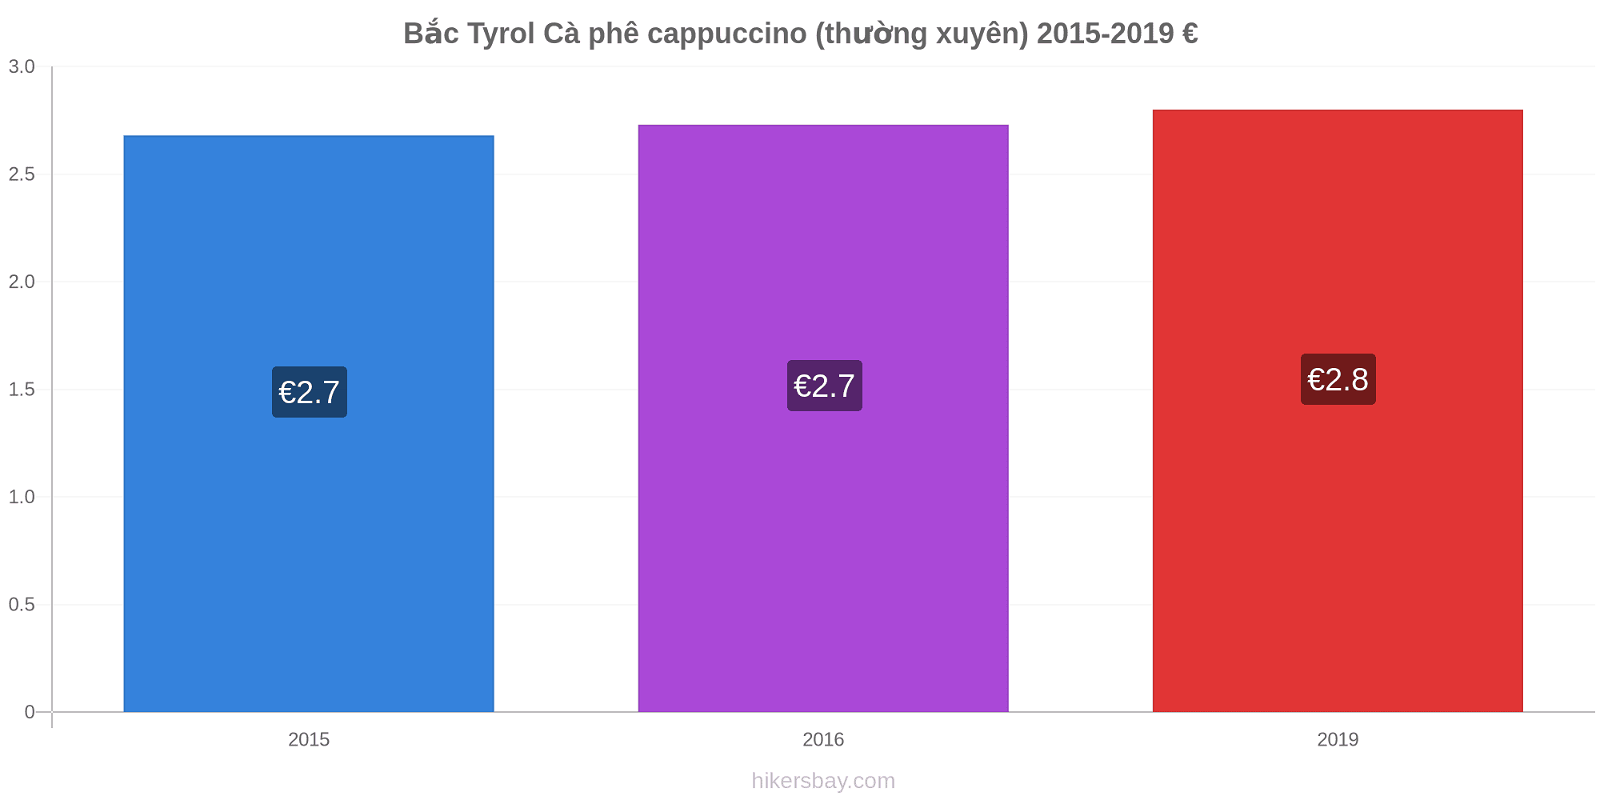 Bắc Tyrol thay đổi giá Cà phê cappuccino (thường xuyên) hikersbay.com